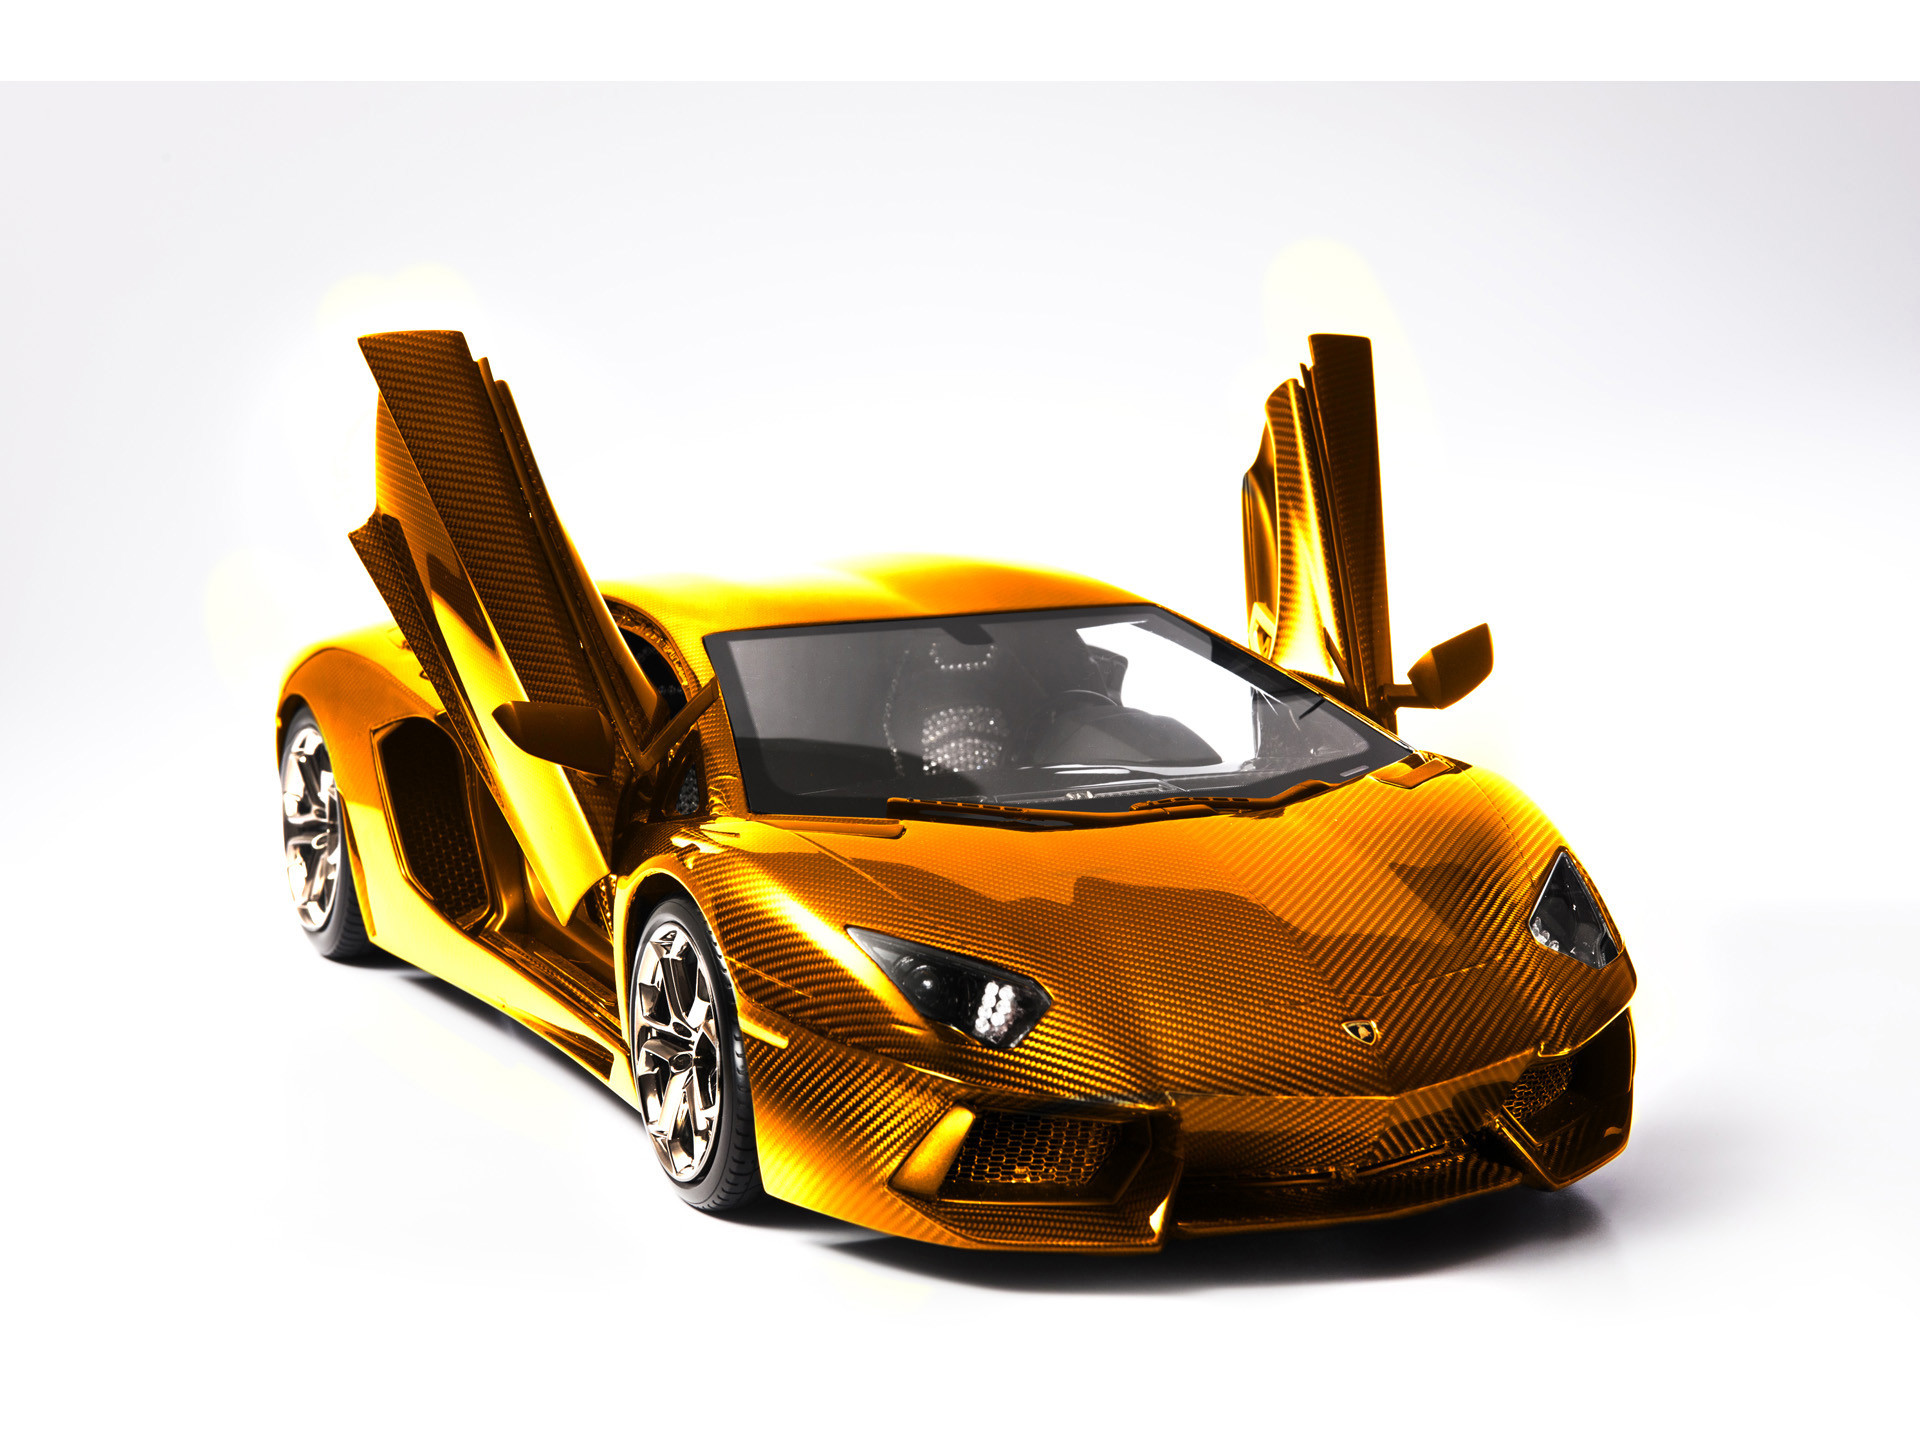 Hãy xem chiếc Lamborghini vàng rực này với những đường nét tinh tế và đầy quyến rũ, chắc chắn bạn sẽ không thể rời mắt khỏi nó. Một thiết kế hoàn hảo cho những người yêu thích sự sang trọng và đẳng cấp.